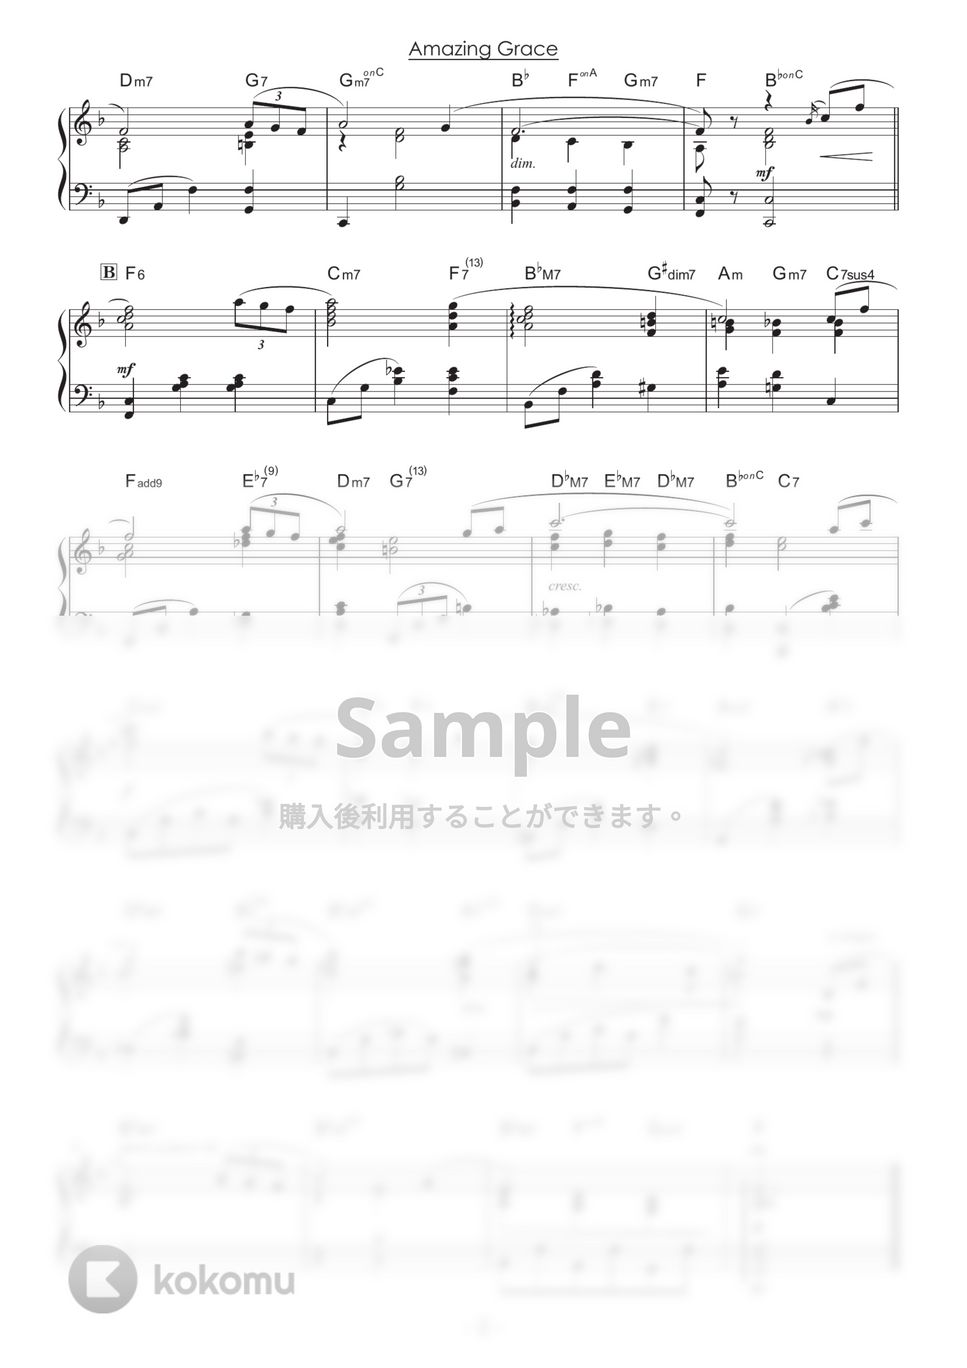 アメイジング・グレイス / Amazing Grace (ピアノ中級) by 山本雅一